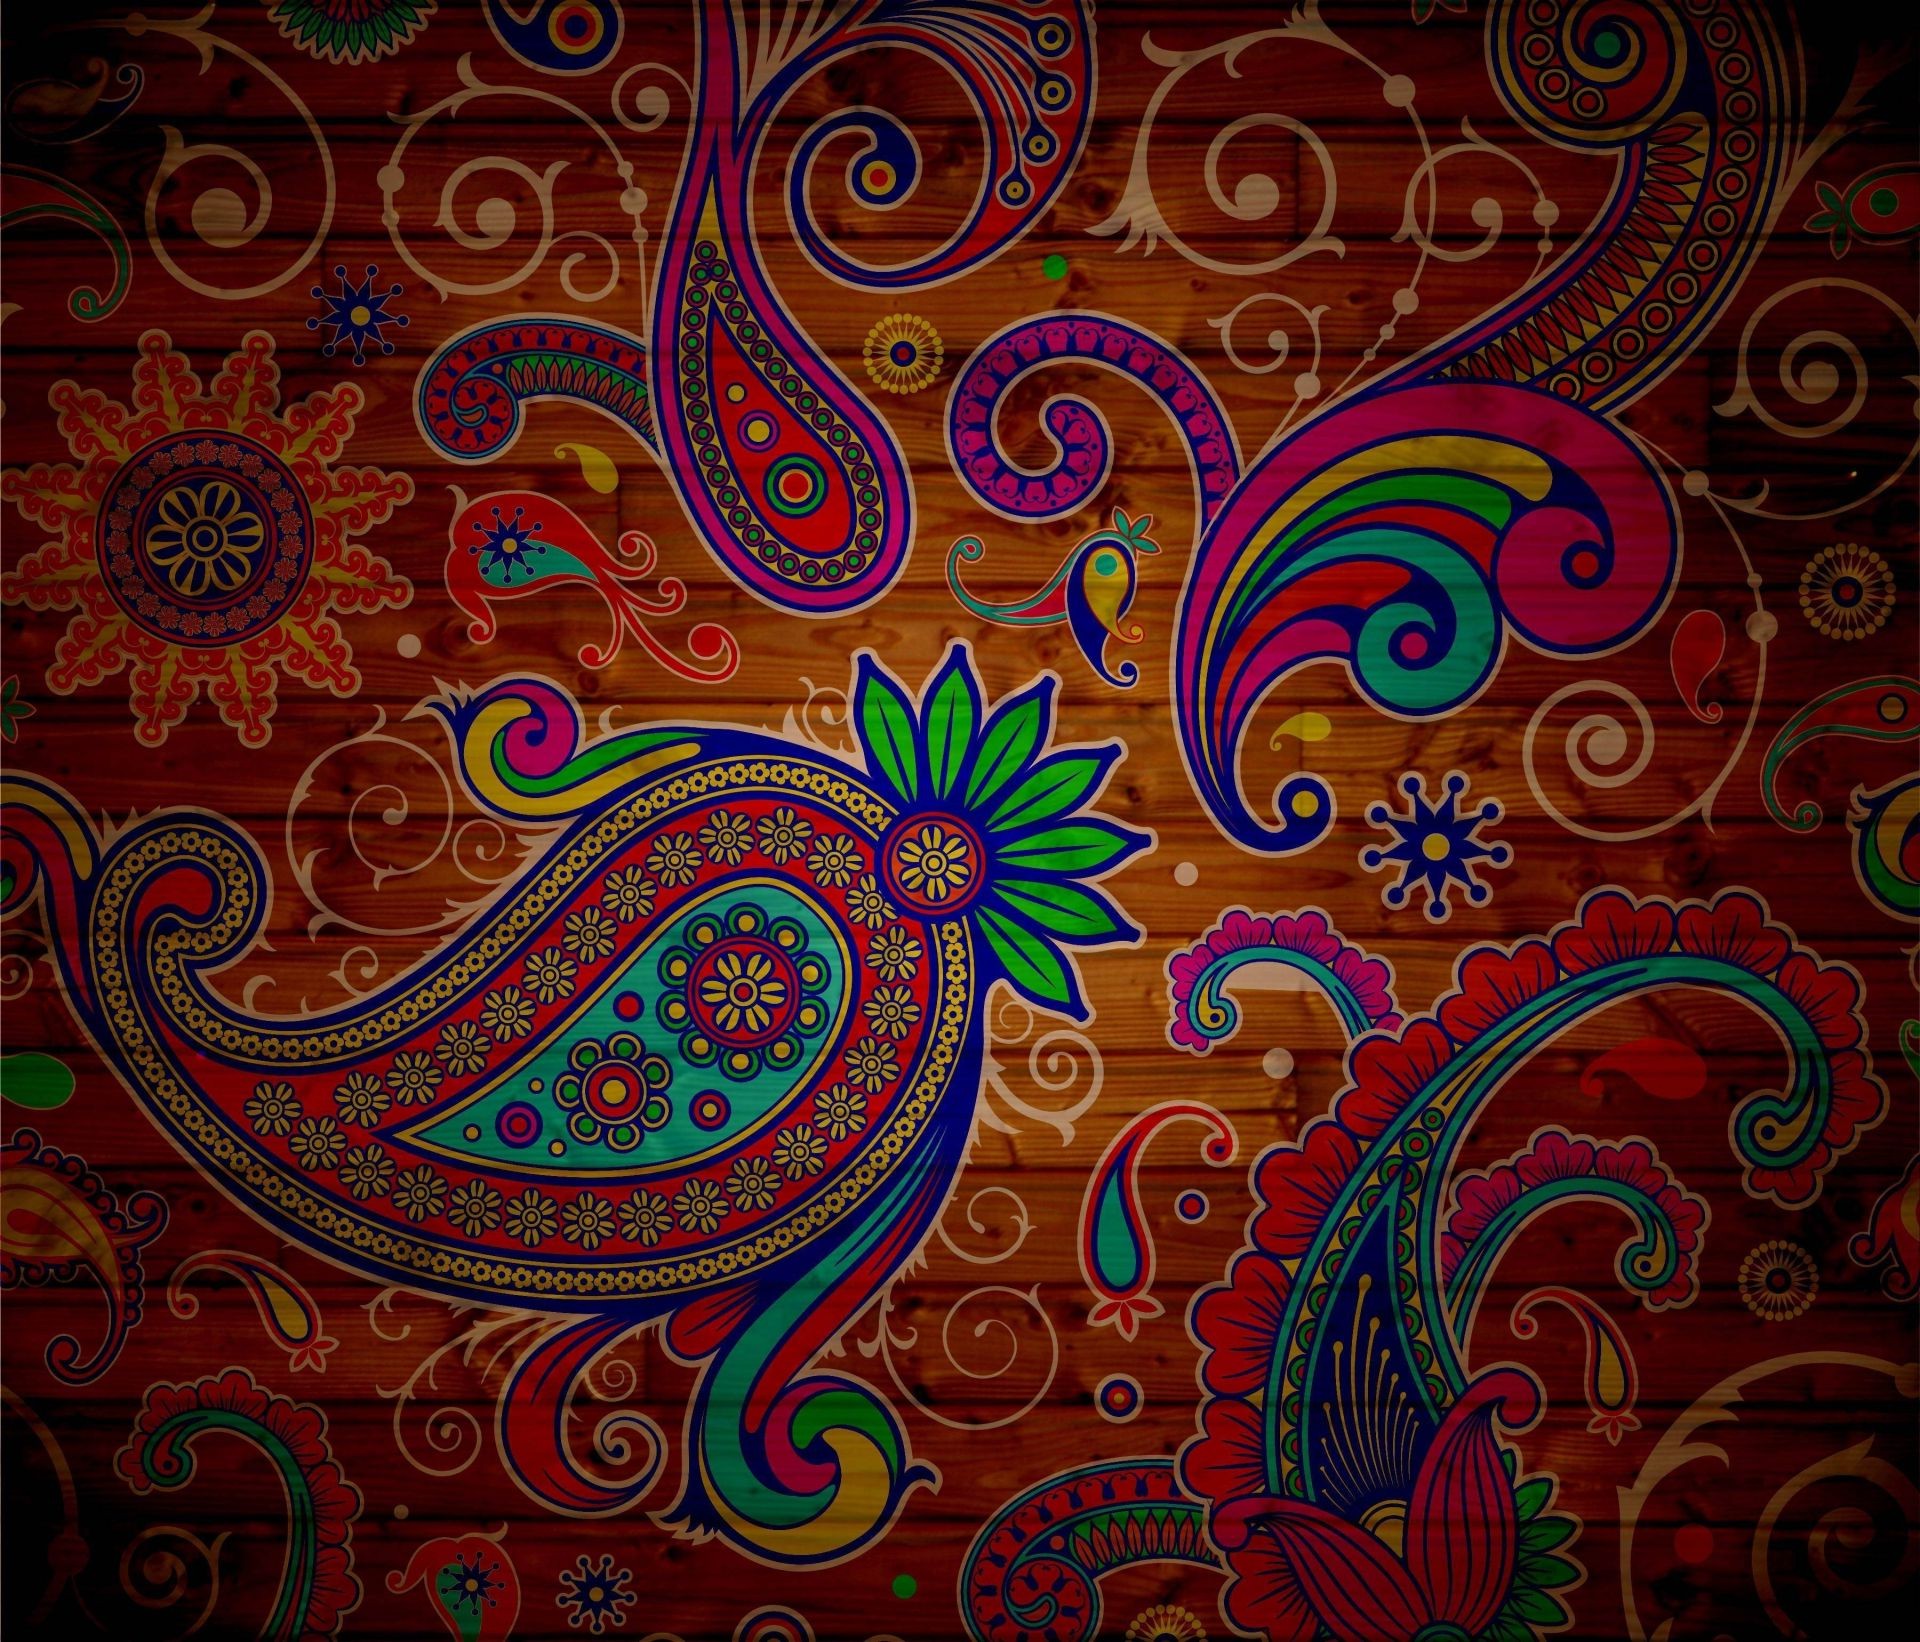 текстуры украшения шаблон искусство витиеватый ретро аннотация обои стиль цветочные текстиль дизайн бесшовные элемент плитка вектор пейсли цветок иллюстрация ткань